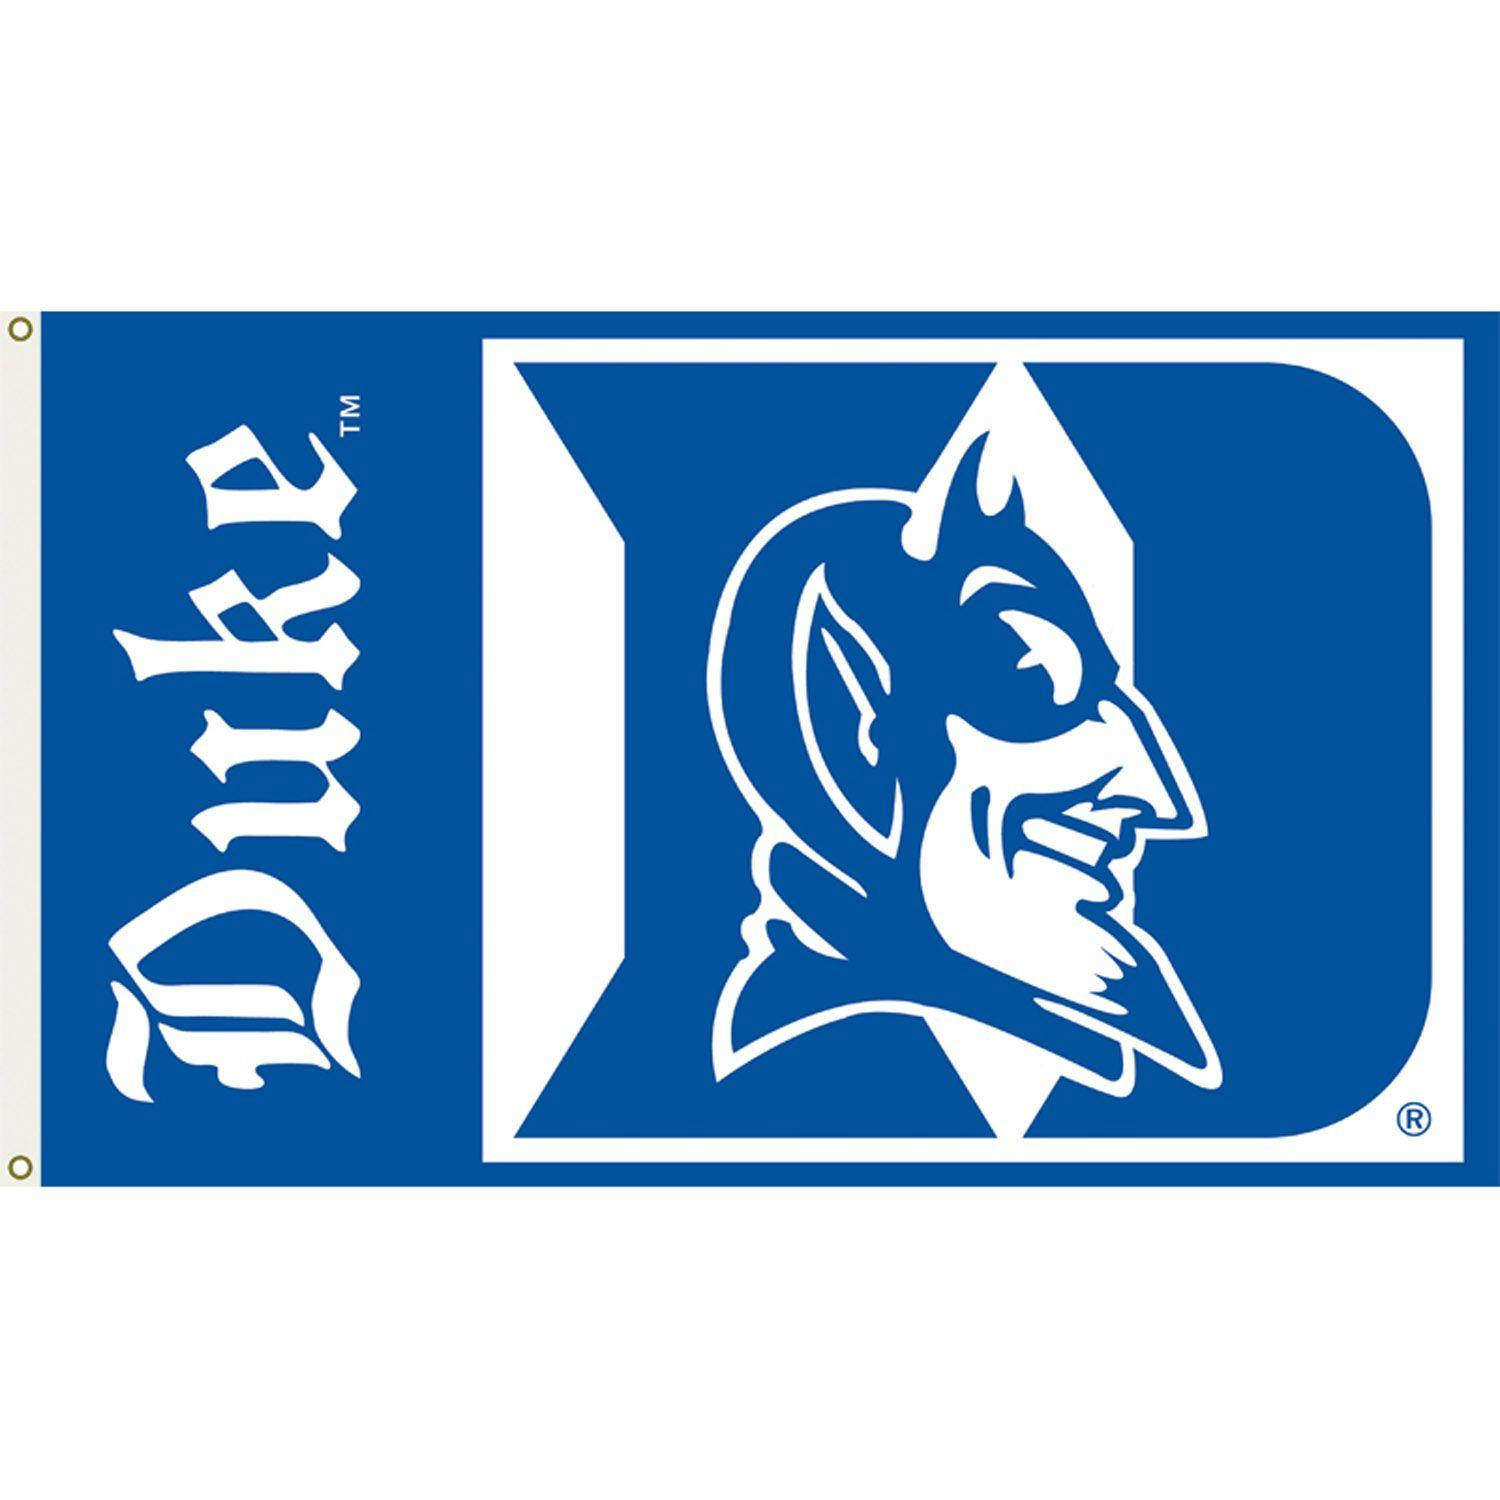 Free Duke University Wallpaper Downloads, [100+] Duke University Wallpapers  for FREE 